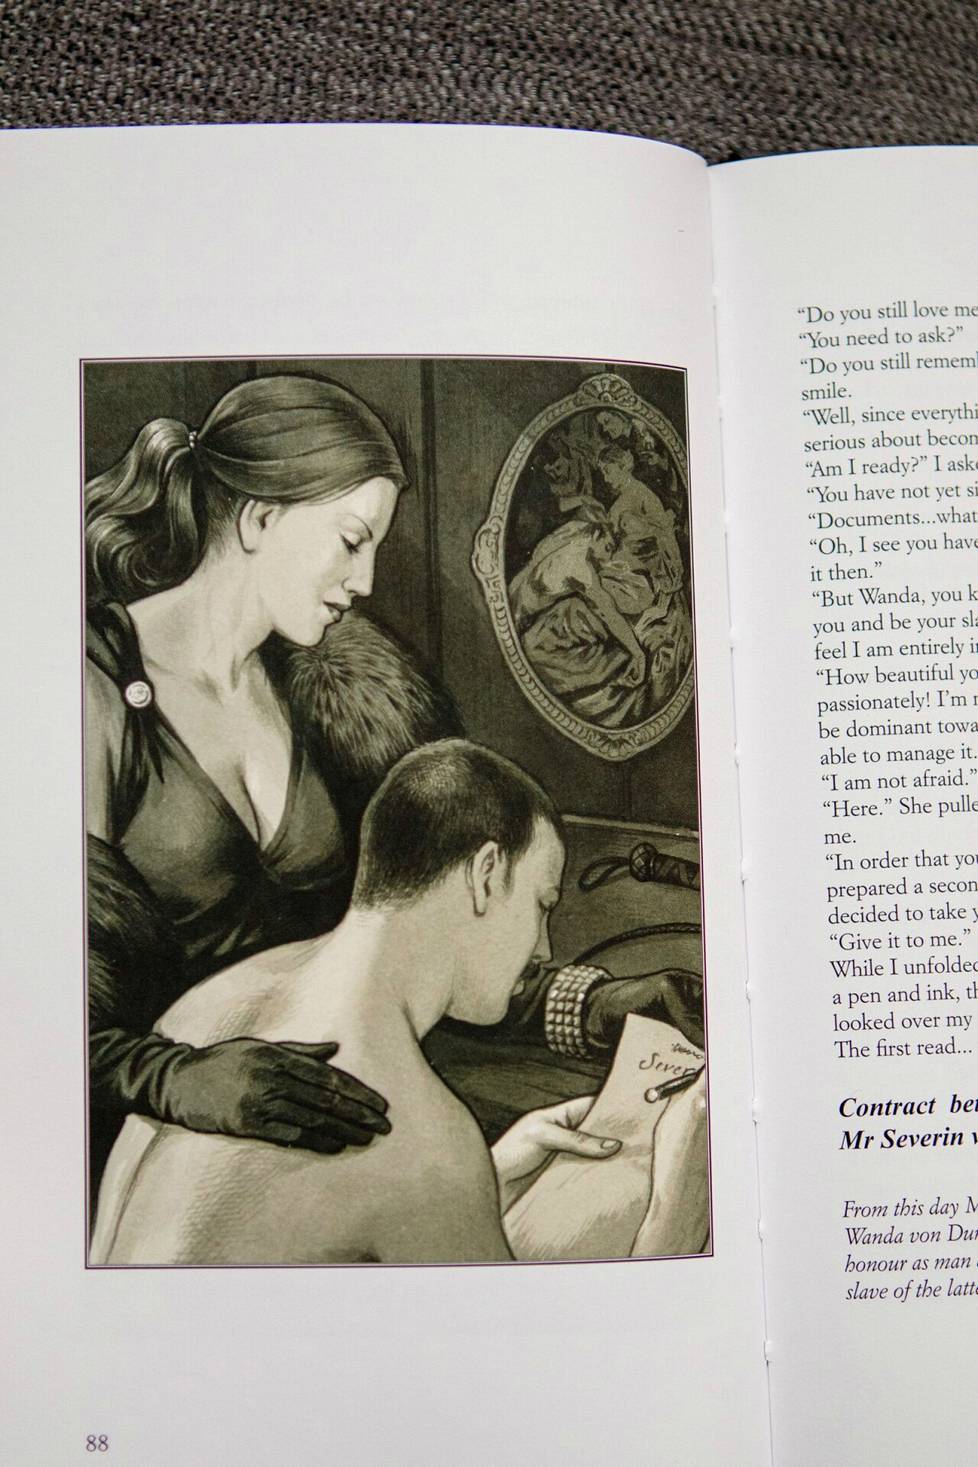 Leopold von Sacher-Masochsin kirjoittamassa ja alunperin vuonna 1870 julkaistussa kirjassa Venus in Furs käsitellään muun muassa sadomasokismia ja fetisismiä. Kirjallisilla valtasopimuksilla on pitkät perinteet. Kyseisen sivun kuvassa mies allekirjoittaa orjasopimusta valtiattarensa valvovan silmän alla.